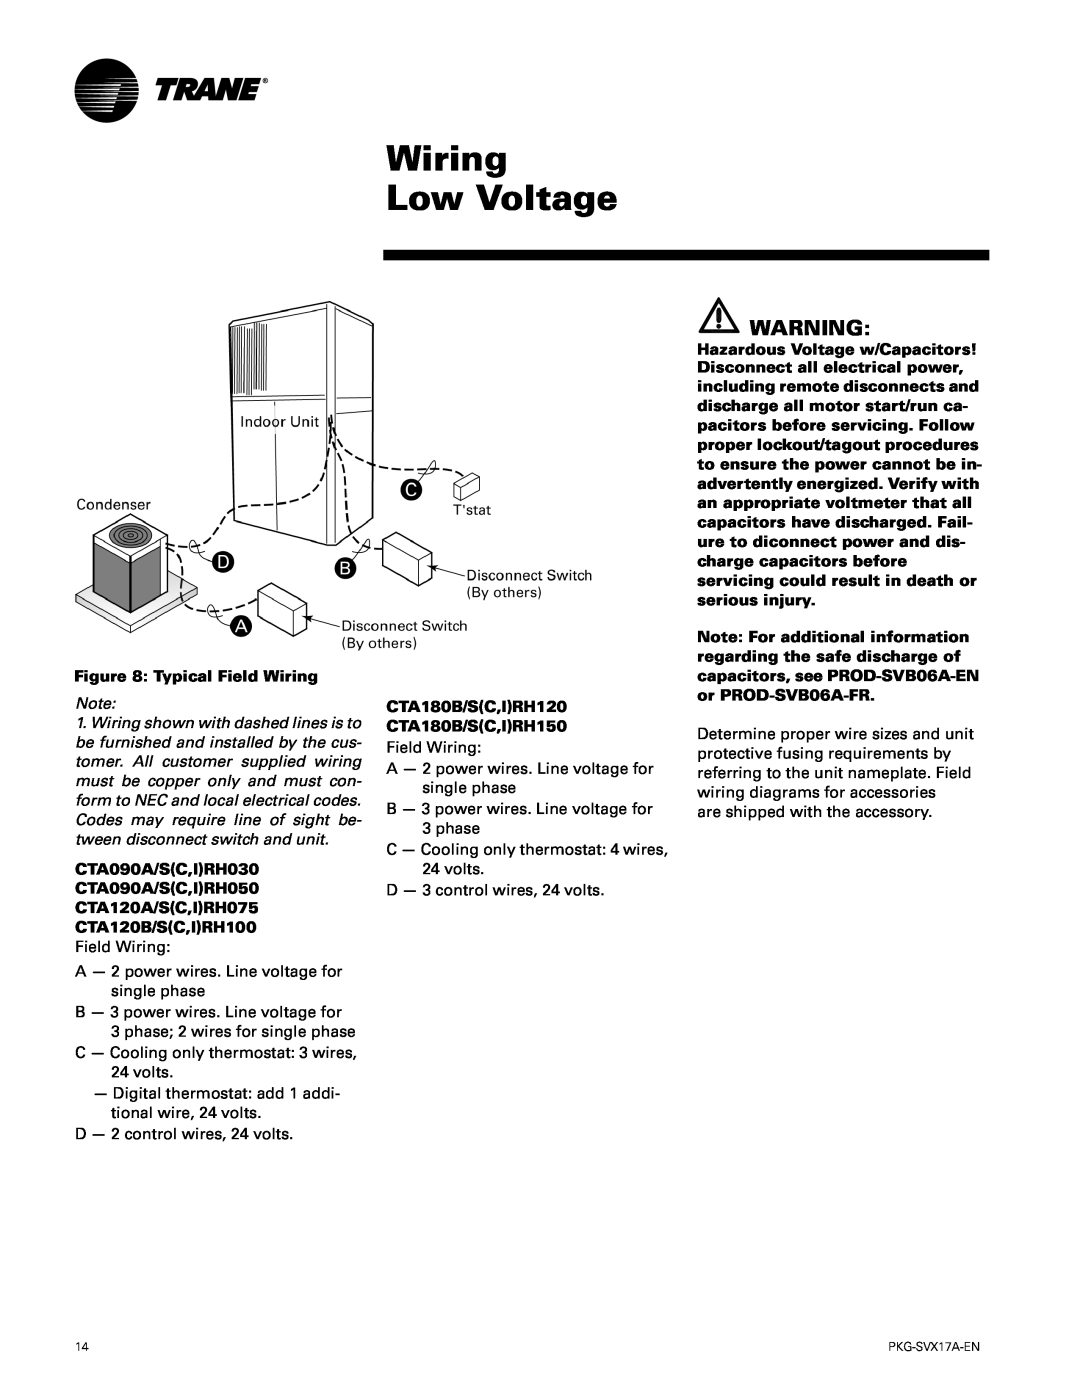 Trane PKG-SVX17A-EN Wiring Low Voltage, Typical Field Wiring, CTA180B/SC,IRH120, CTA180B/SC,IRH150, CTA090A/SC,IRH030 